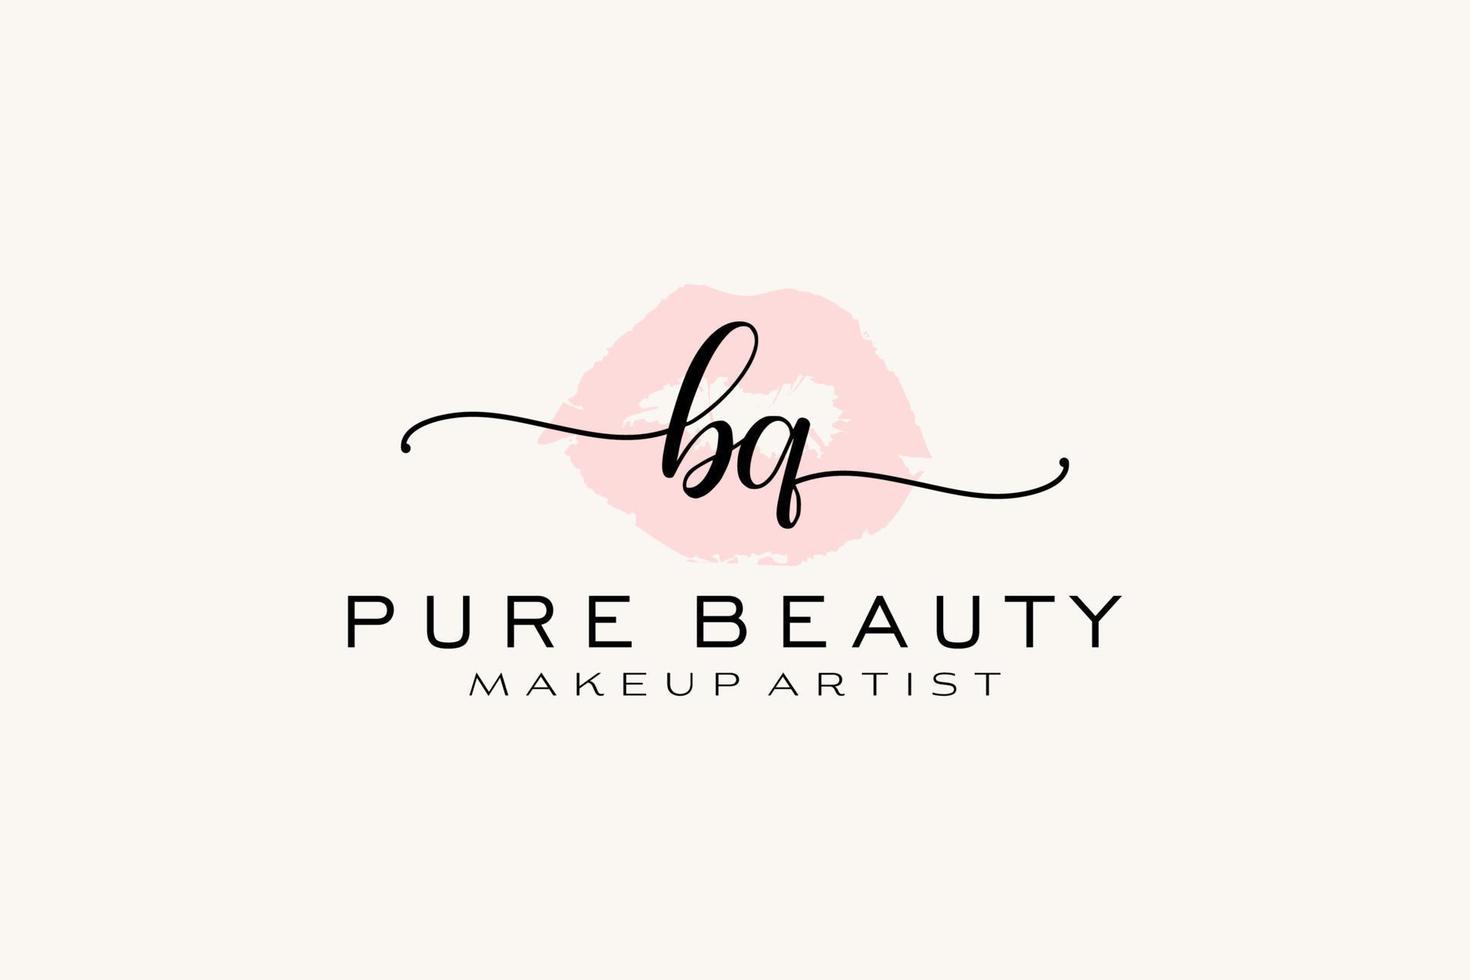 création initiale de logo préfabriqué pour les lèvres aquarelle bq, logo pour la marque d'entreprise de maquilleur, création de logo de boutique de beauté blush, logo de calligraphie avec modèle créatif. vecteur